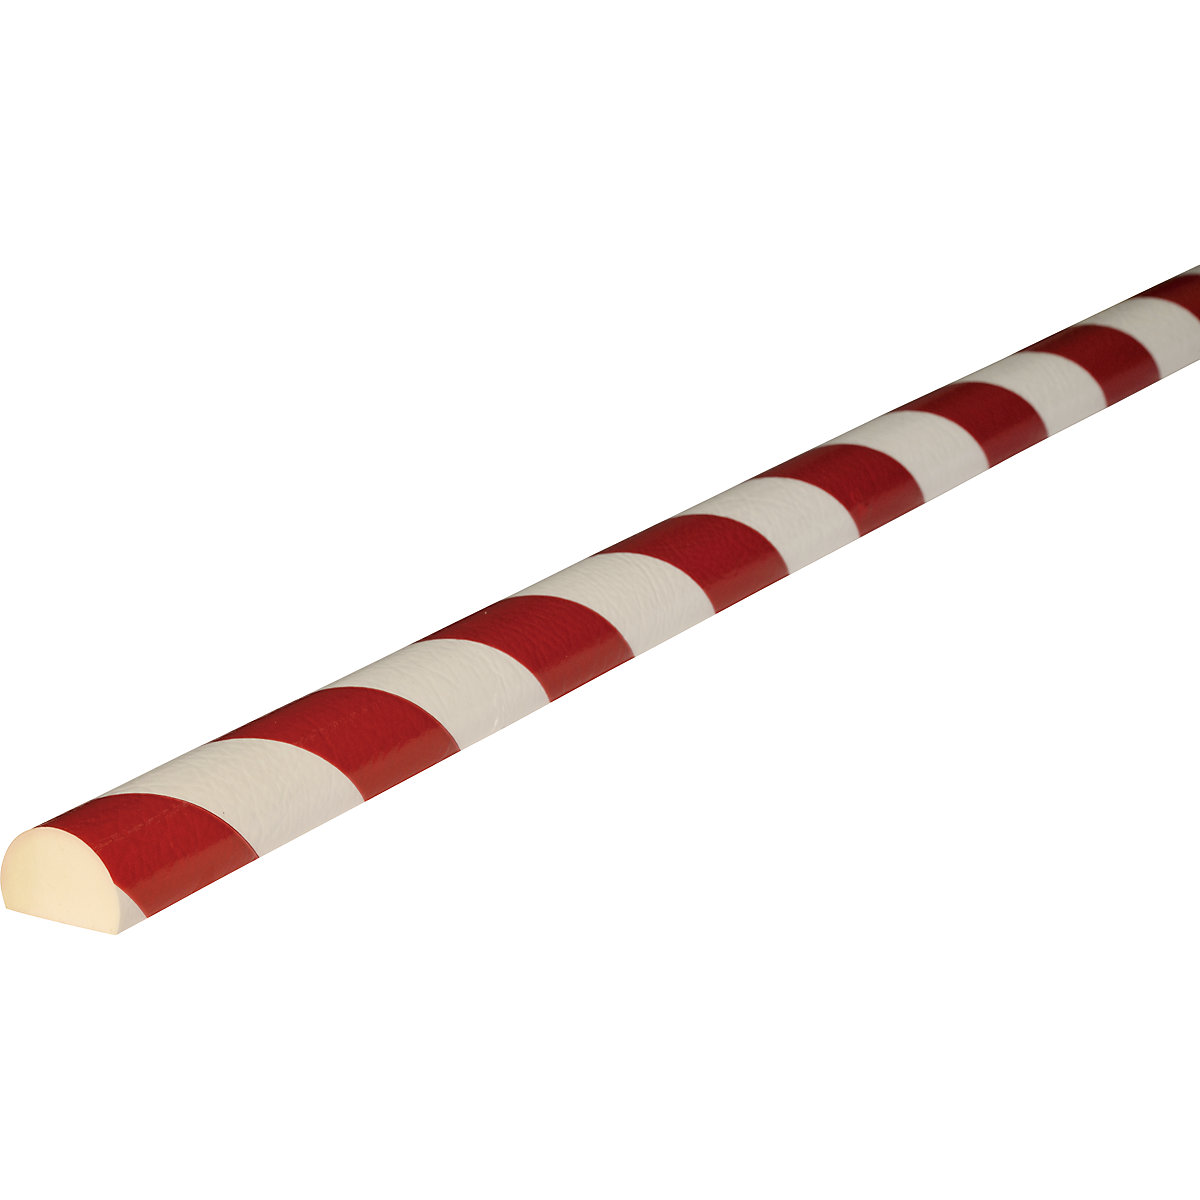 Protección de superficies Knuffi® – SHG, tipo C, pieza de 1 m, en rojo y blanco-20